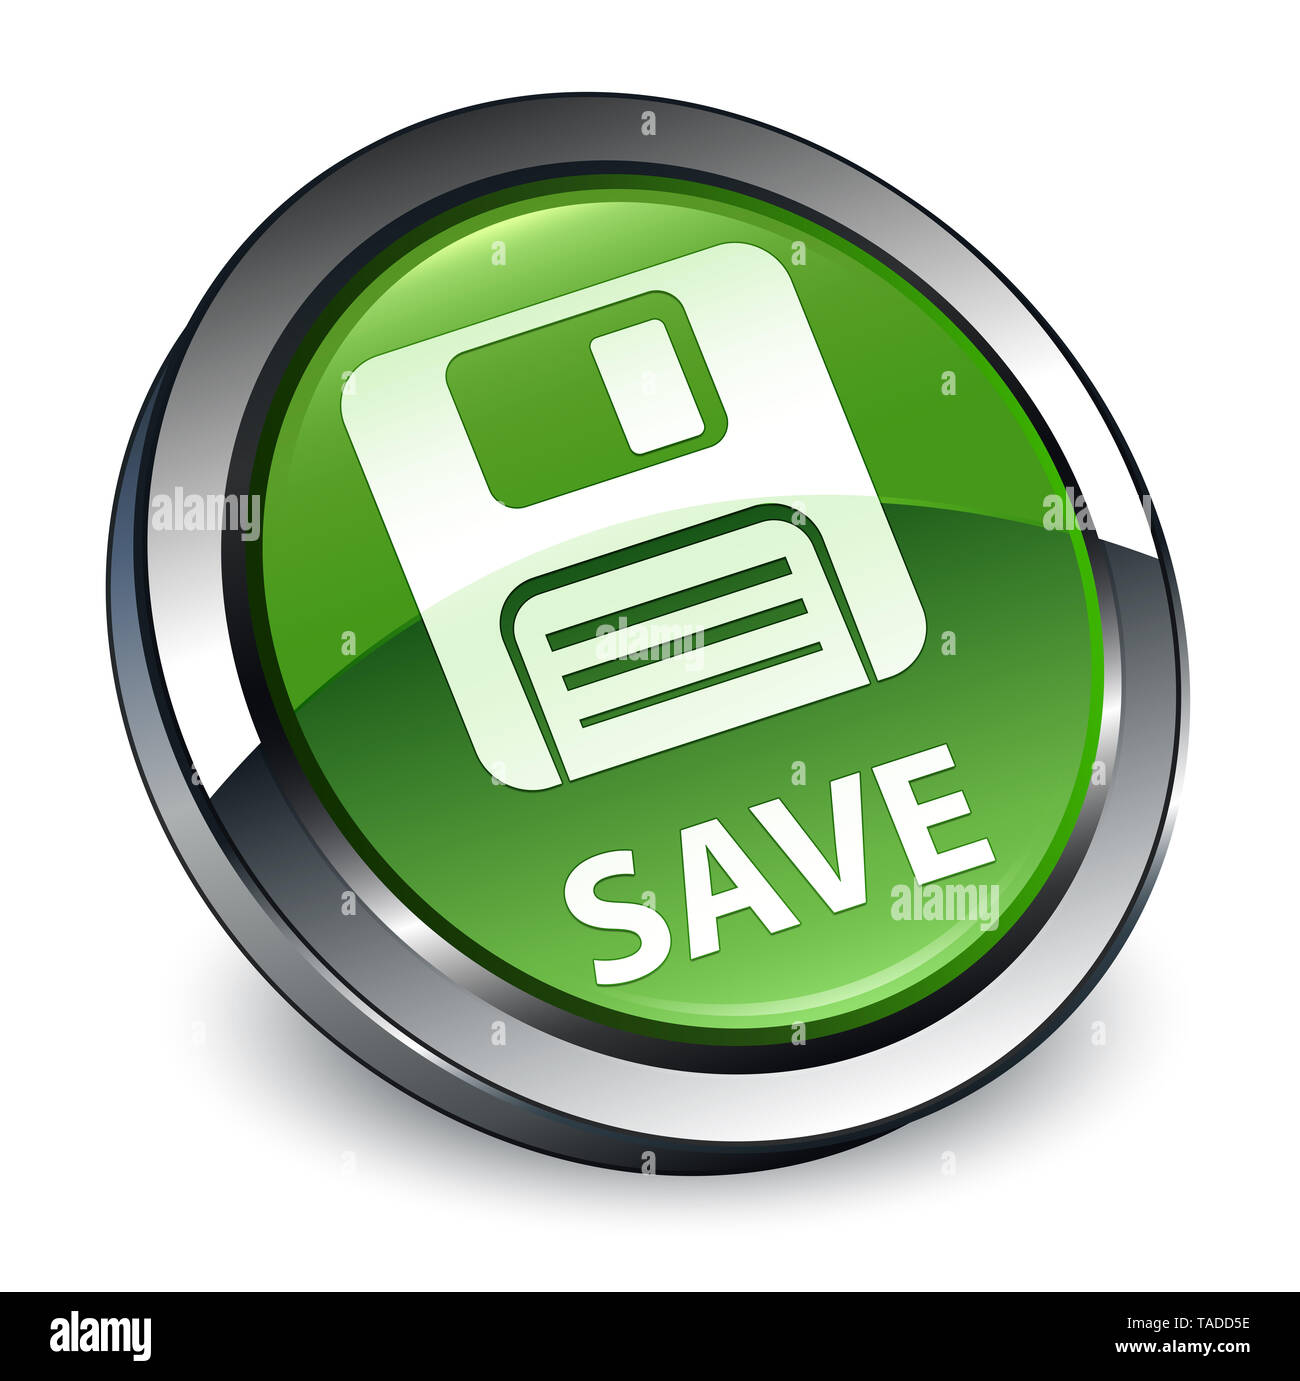 Salvare (floppy disk icona) isolati su 3d soft verde pulsante rotondo illustrazione astratta Foto Stock